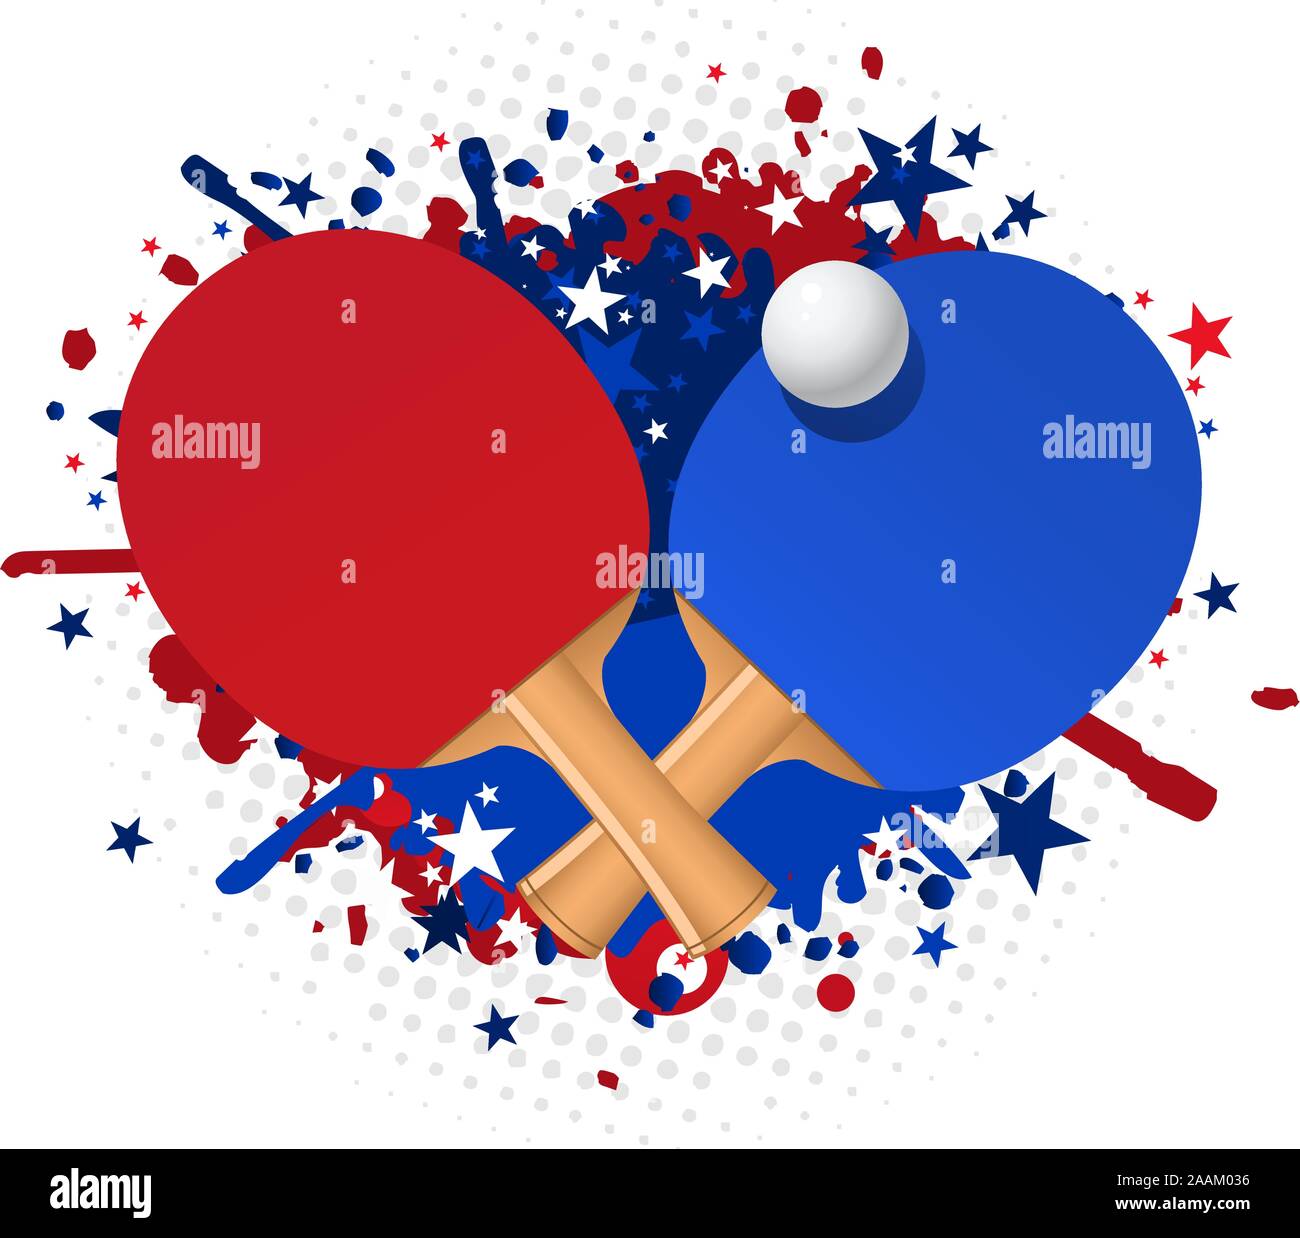 Ping pong rosso e blu splash racchetta con la sfera e stelle illustrazione vettoriale. Illustrazione Vettoriale